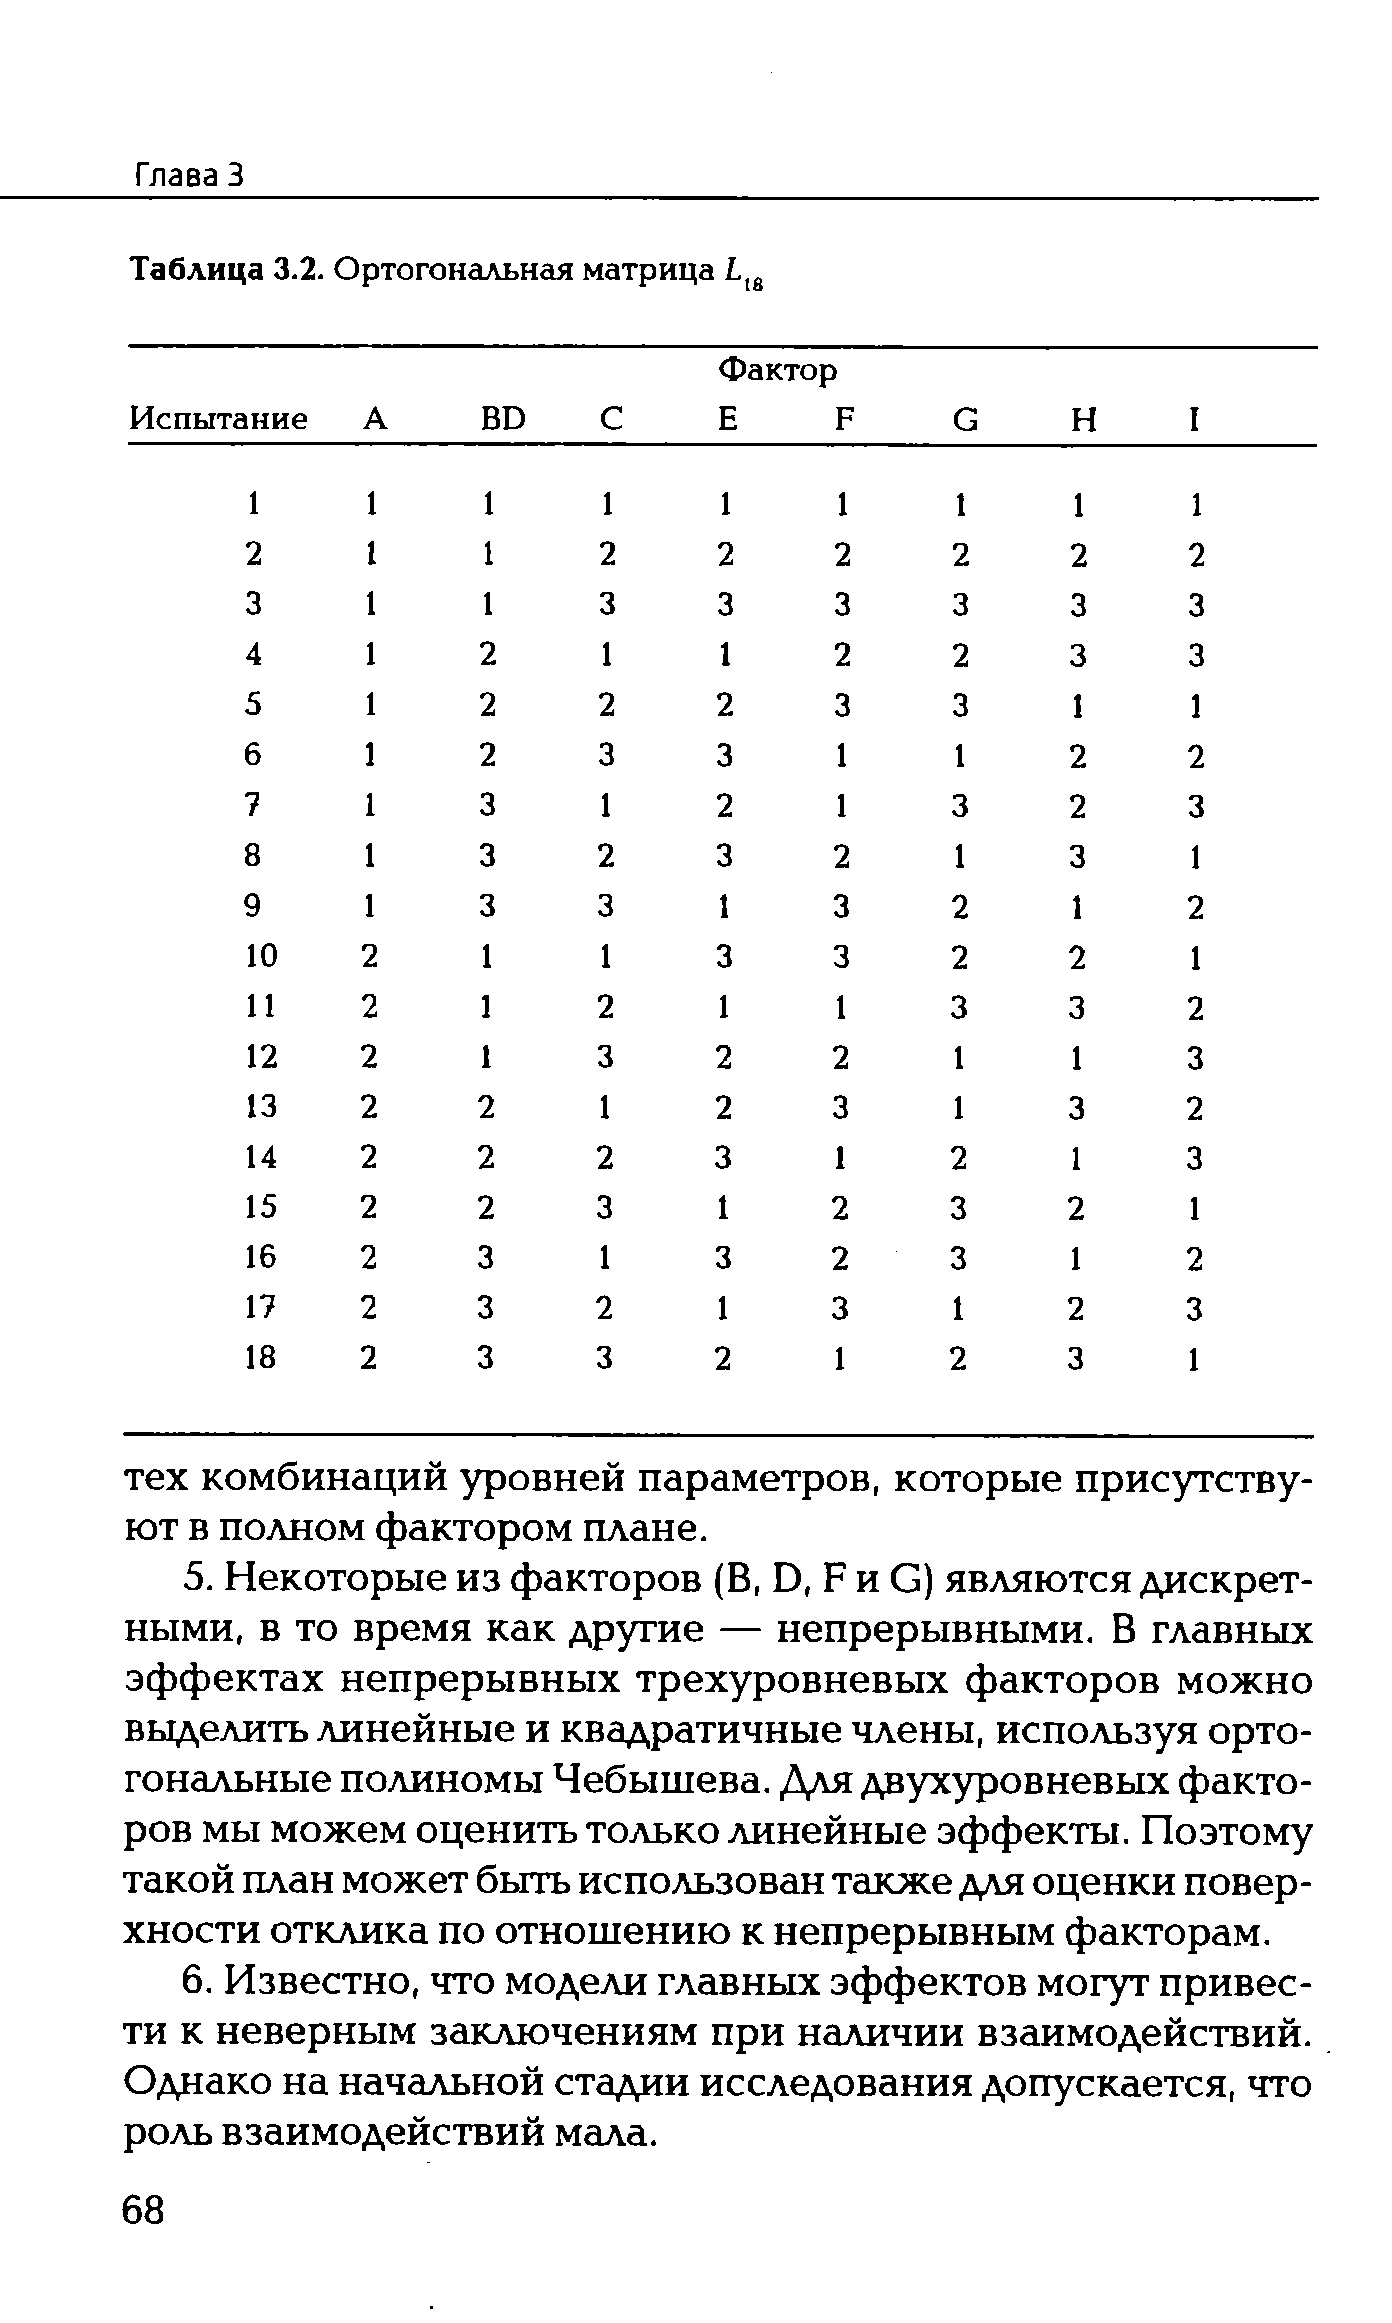 Таблица 3.2. Ортогональная матрица 118
